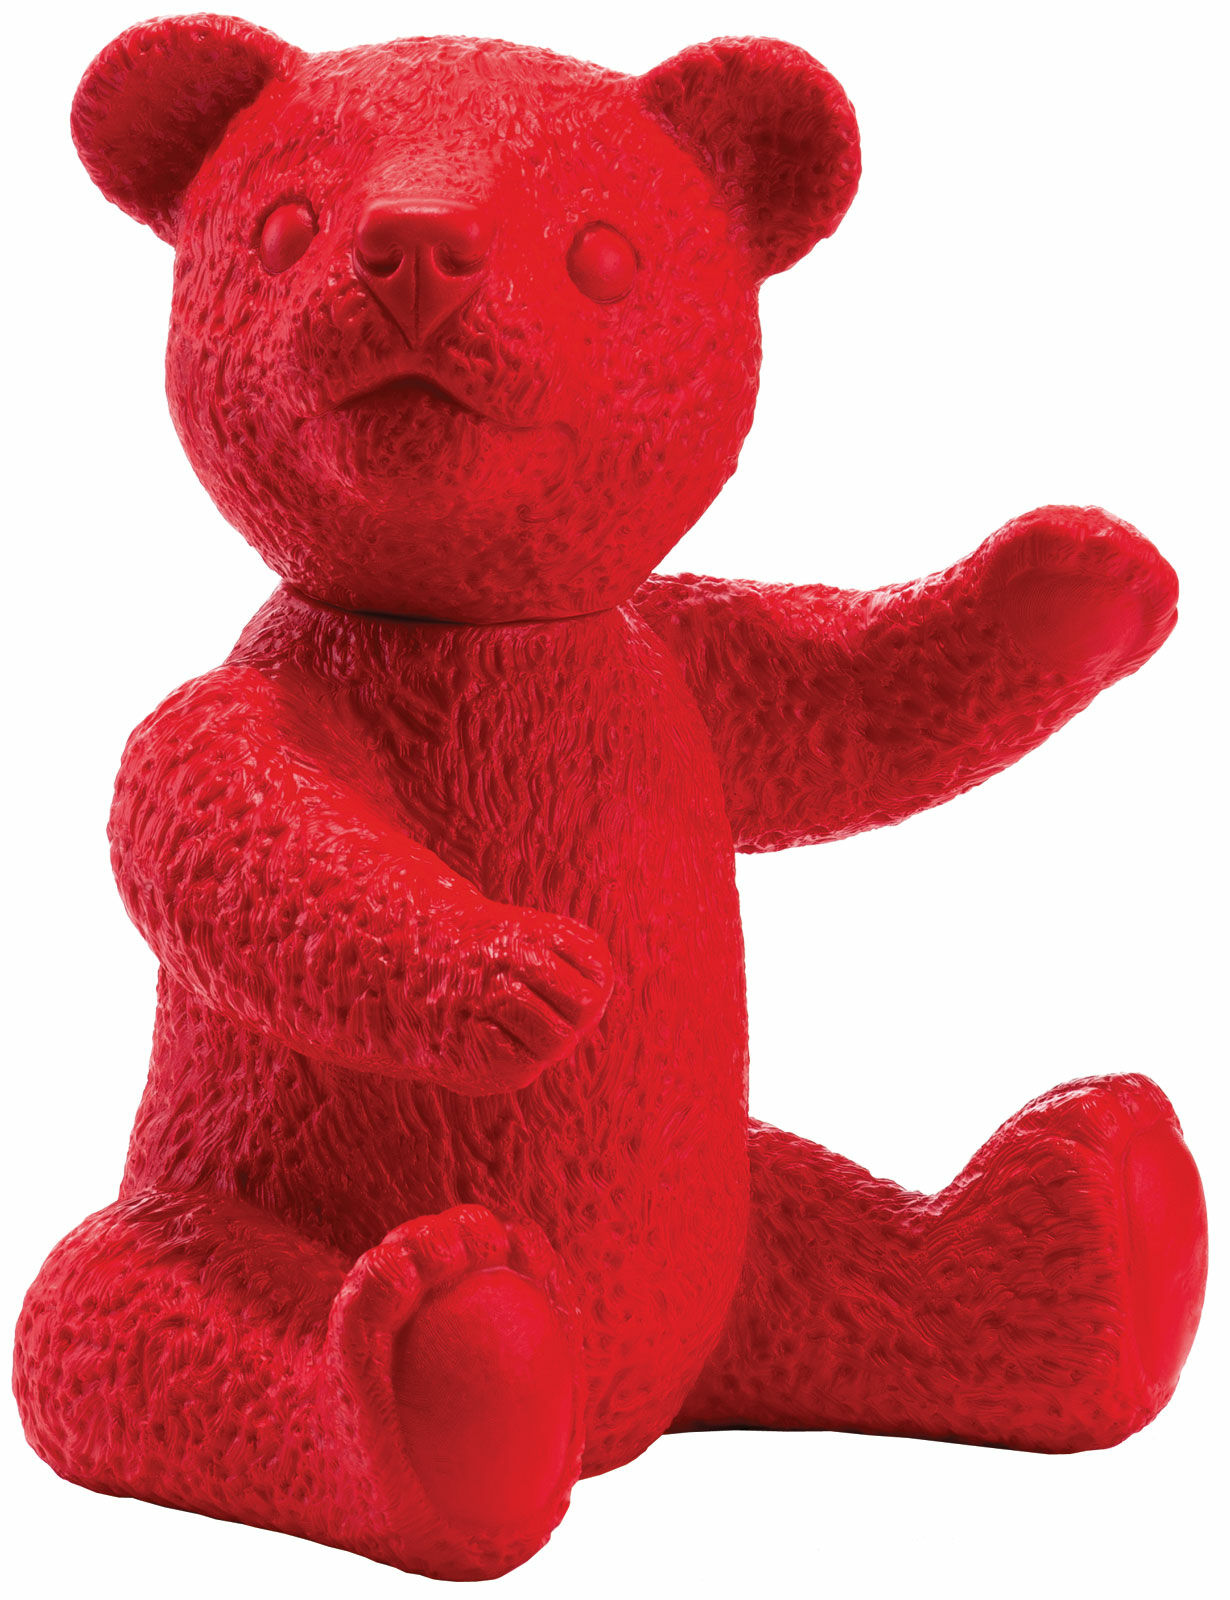 Skulptur "Teddy rot" (2007), signierte Version von Ottmar Hörl